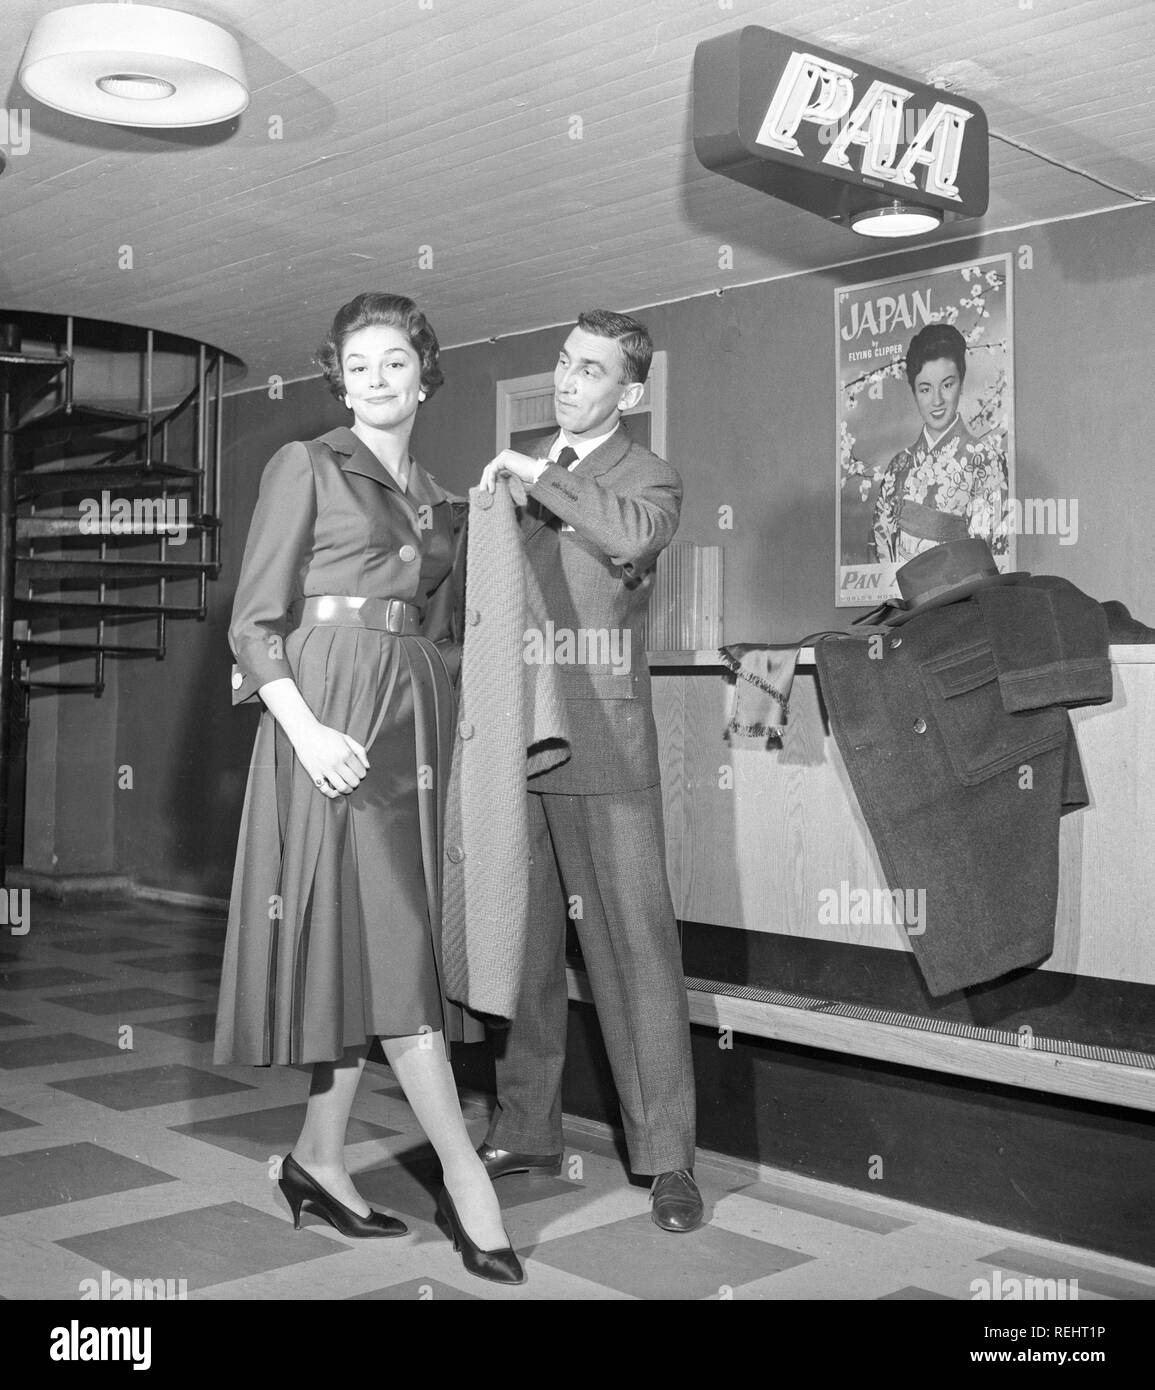 Couple dans les années 1950. Un jeune couple dans un aéroport, prêts pour leur voyage de vacances avec Pan American Airlines. Il est un gentleman et l'aide avec son manteau. La Suède des années 1950. Kristoffersson Photo Ref CB15-12 Banque D'Images